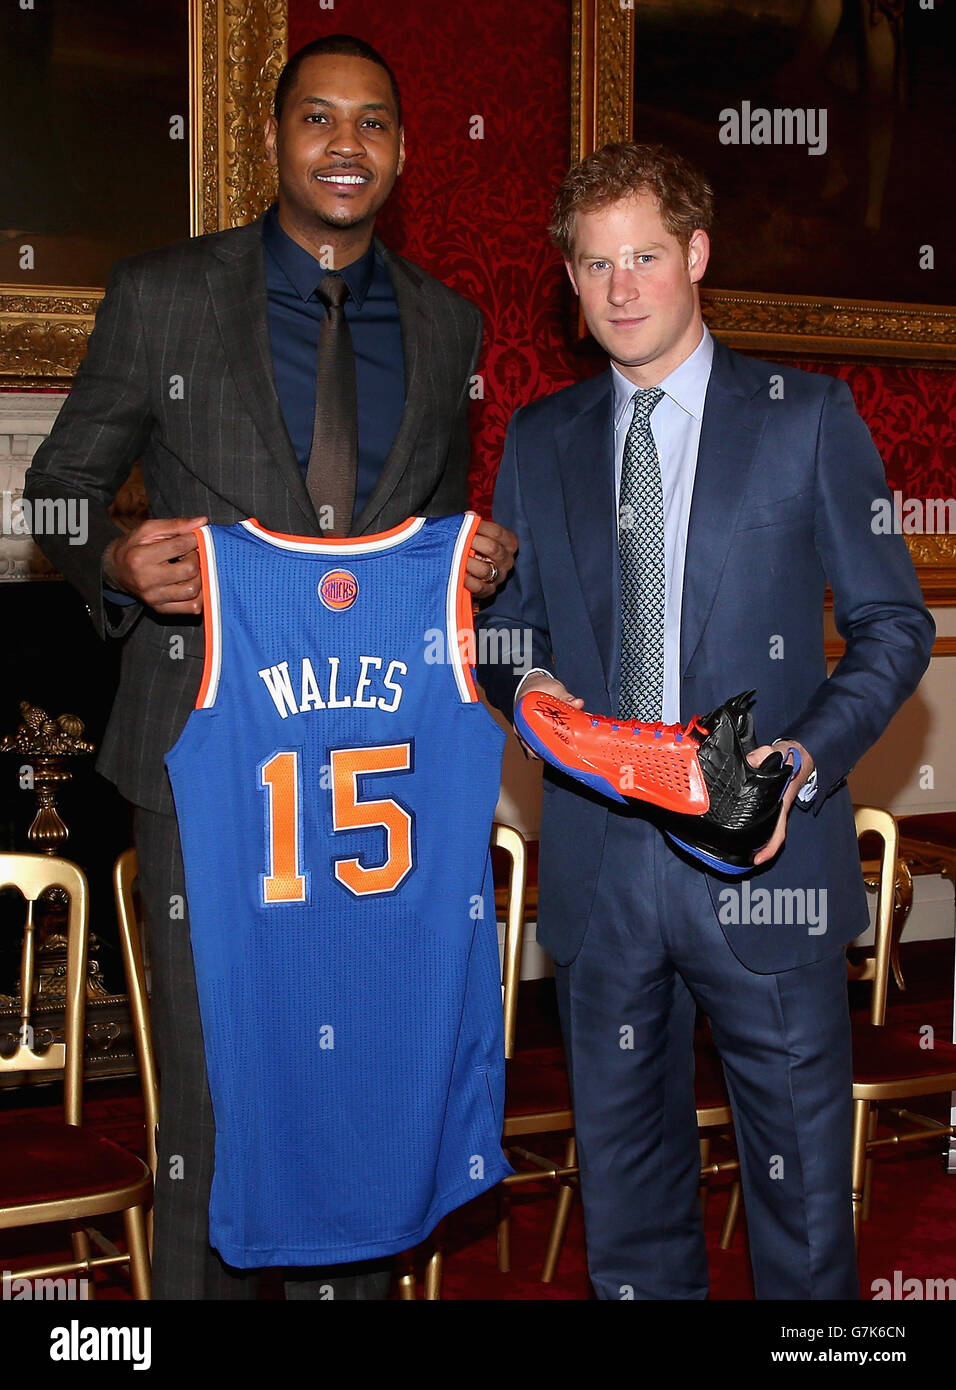 Prince Harry viene presentato con una camicia da basket e una scarpa da  basket taglia 15 di NBA All-Star Carmelo Anthony durante un evento di  laurea Coach-Core al St James's Palace di